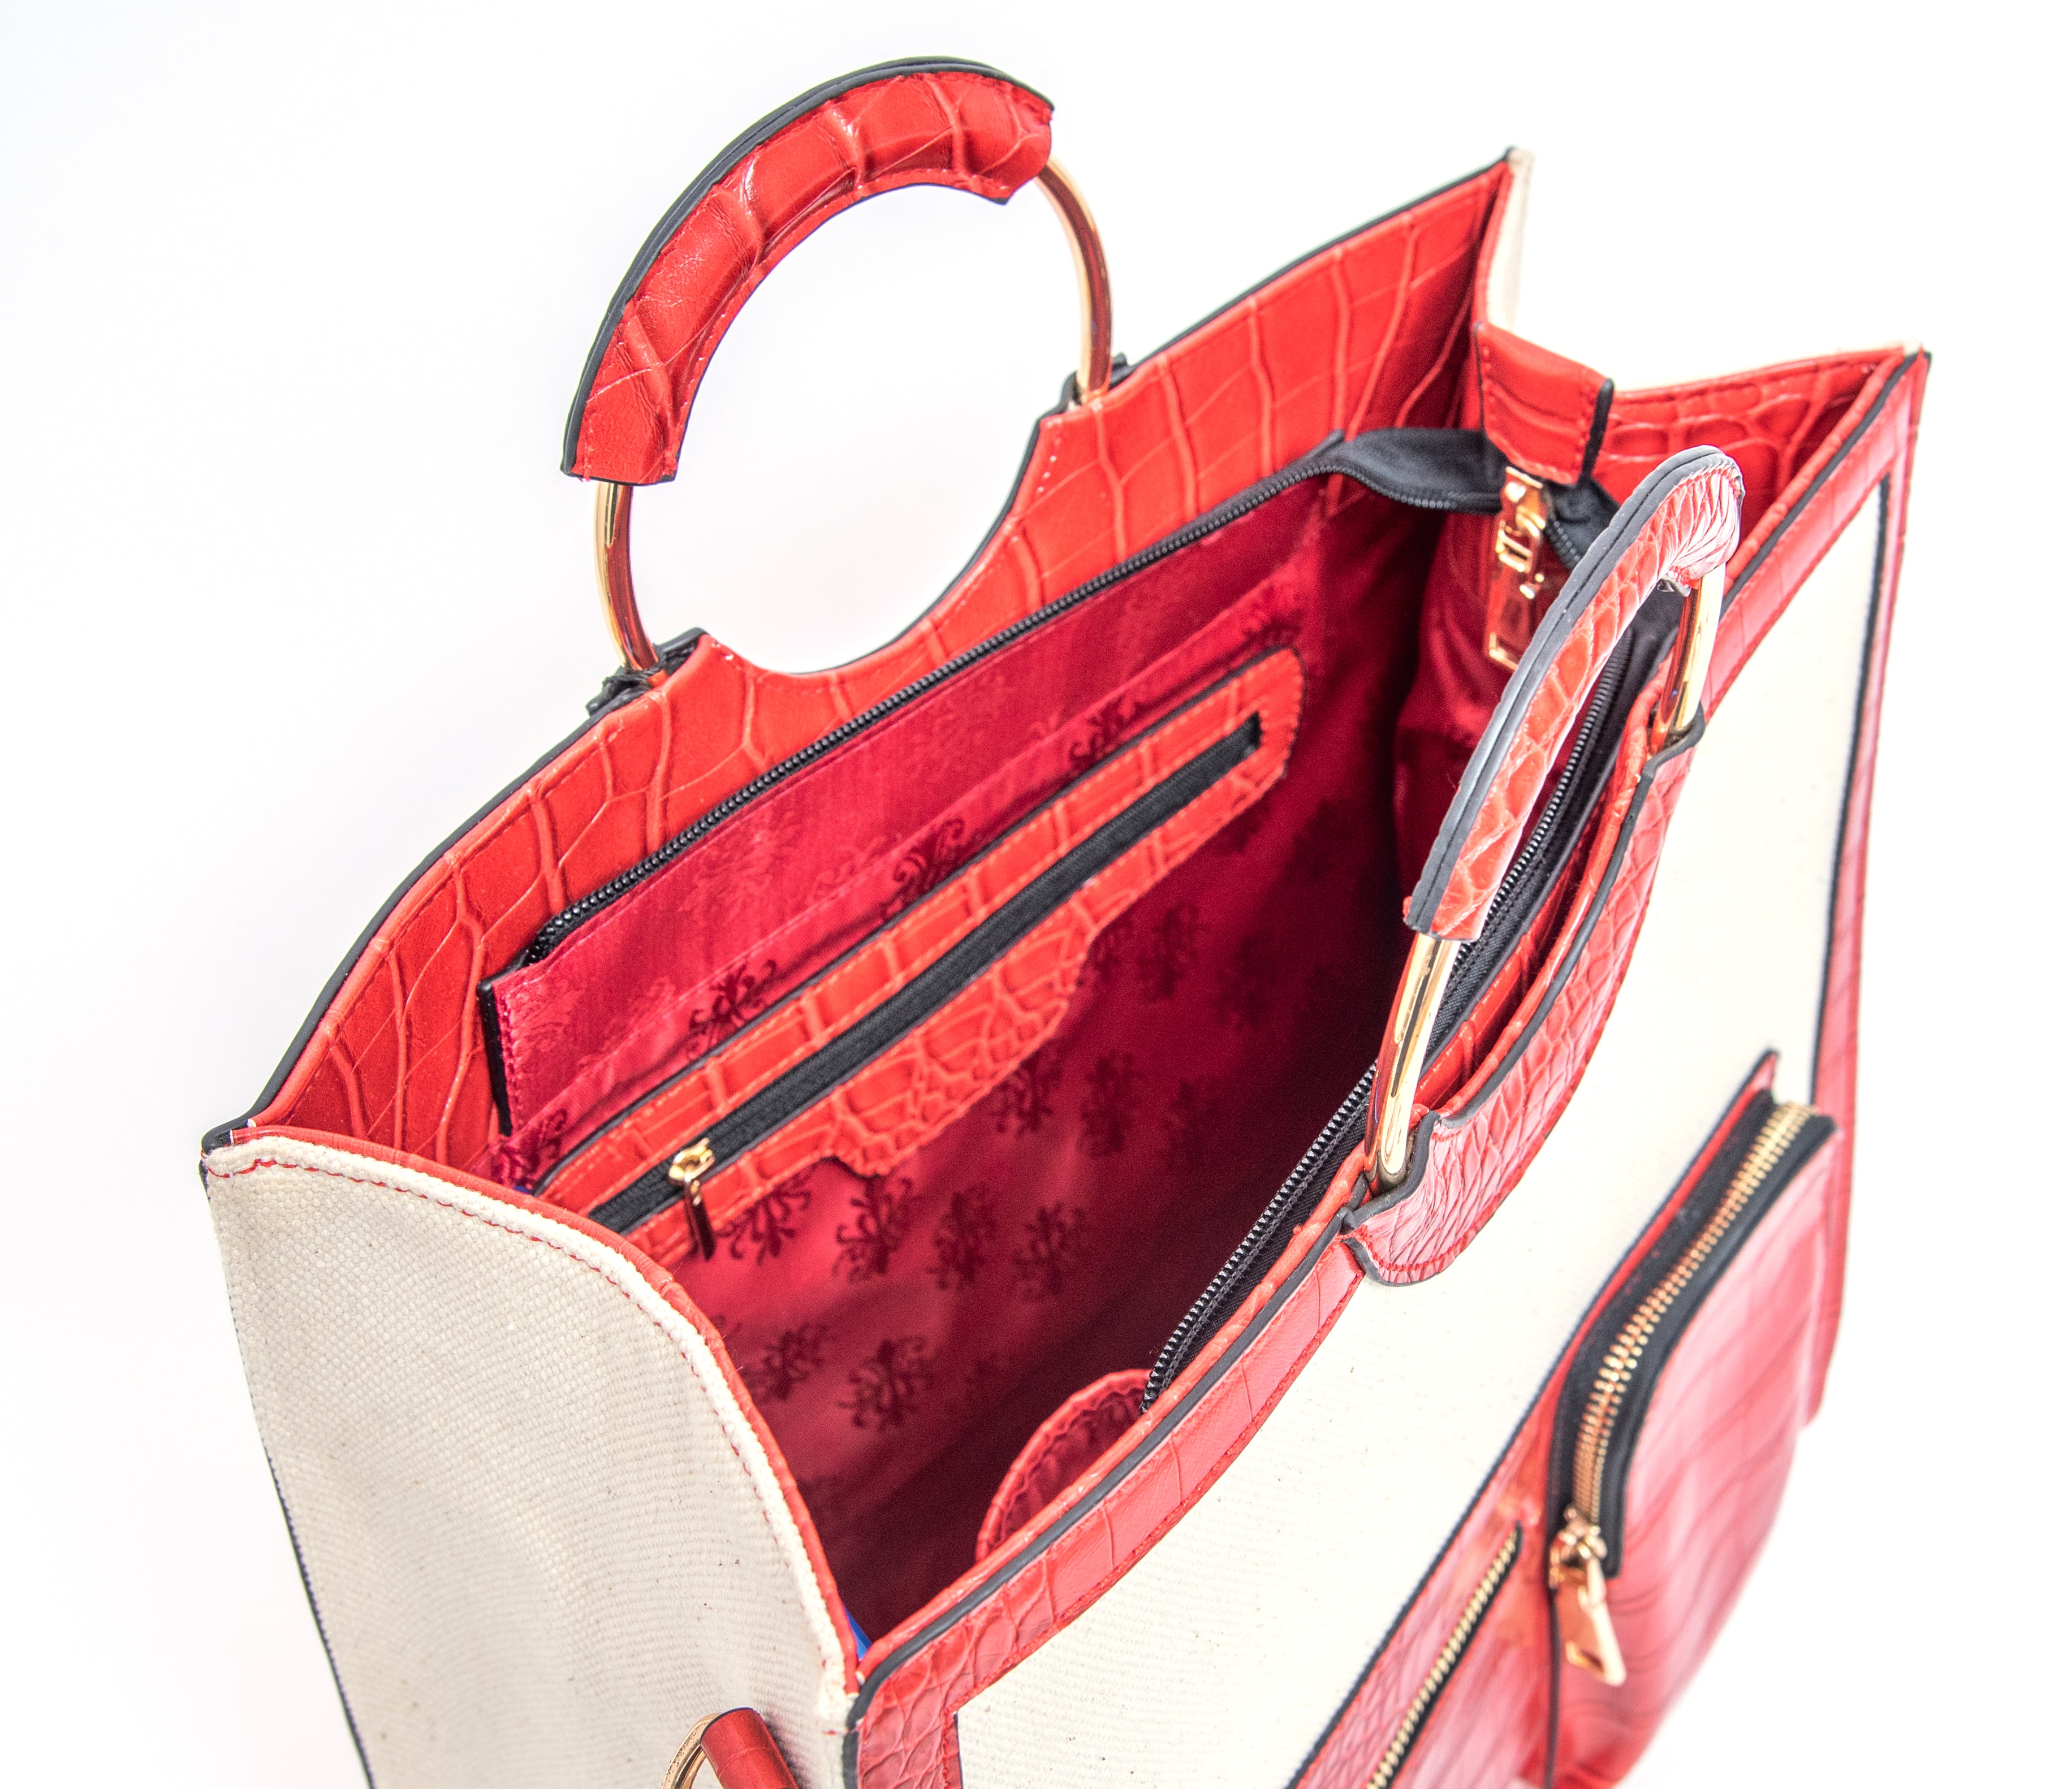 Okella “Crimson” Handbag